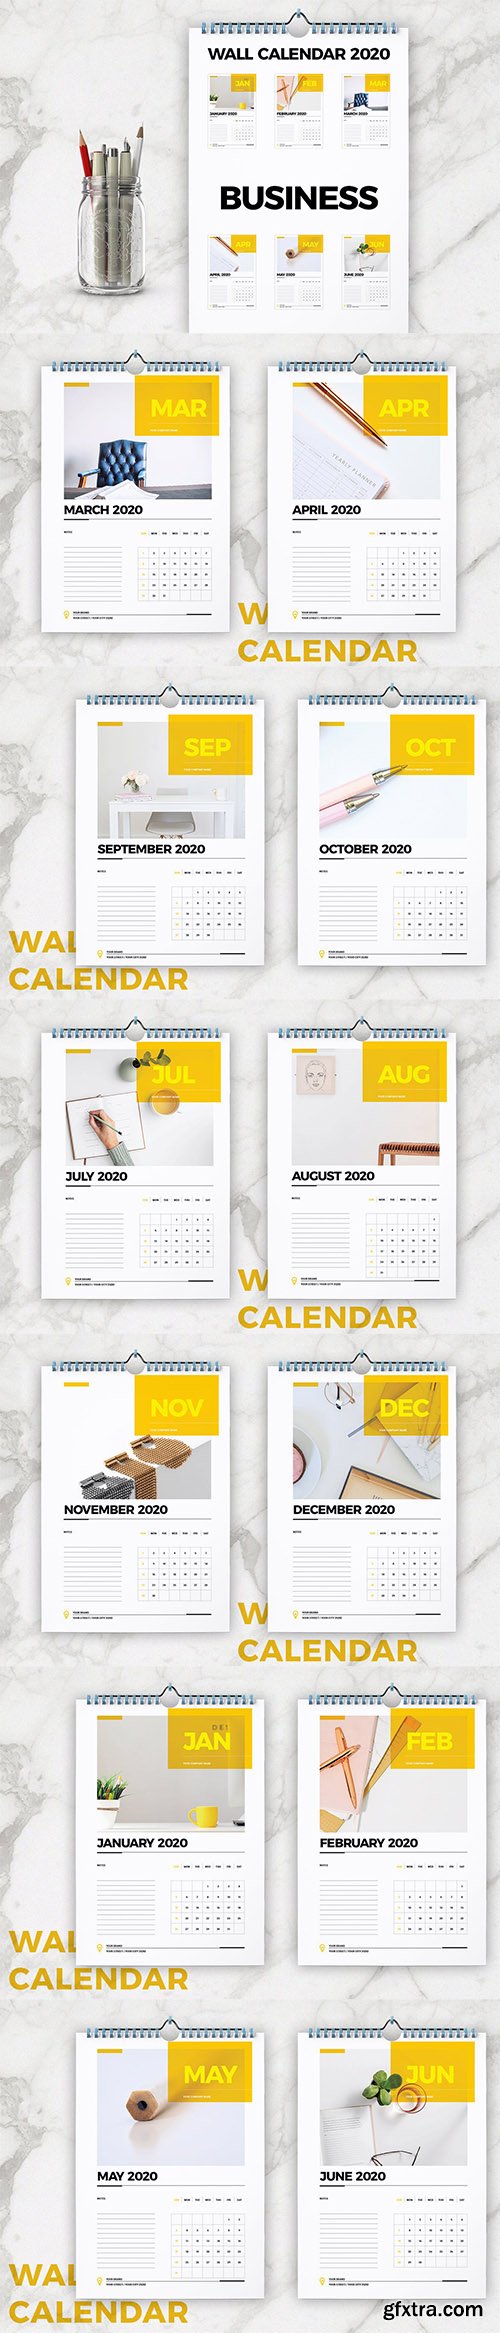 Wall Calendar 2020 Layout 5